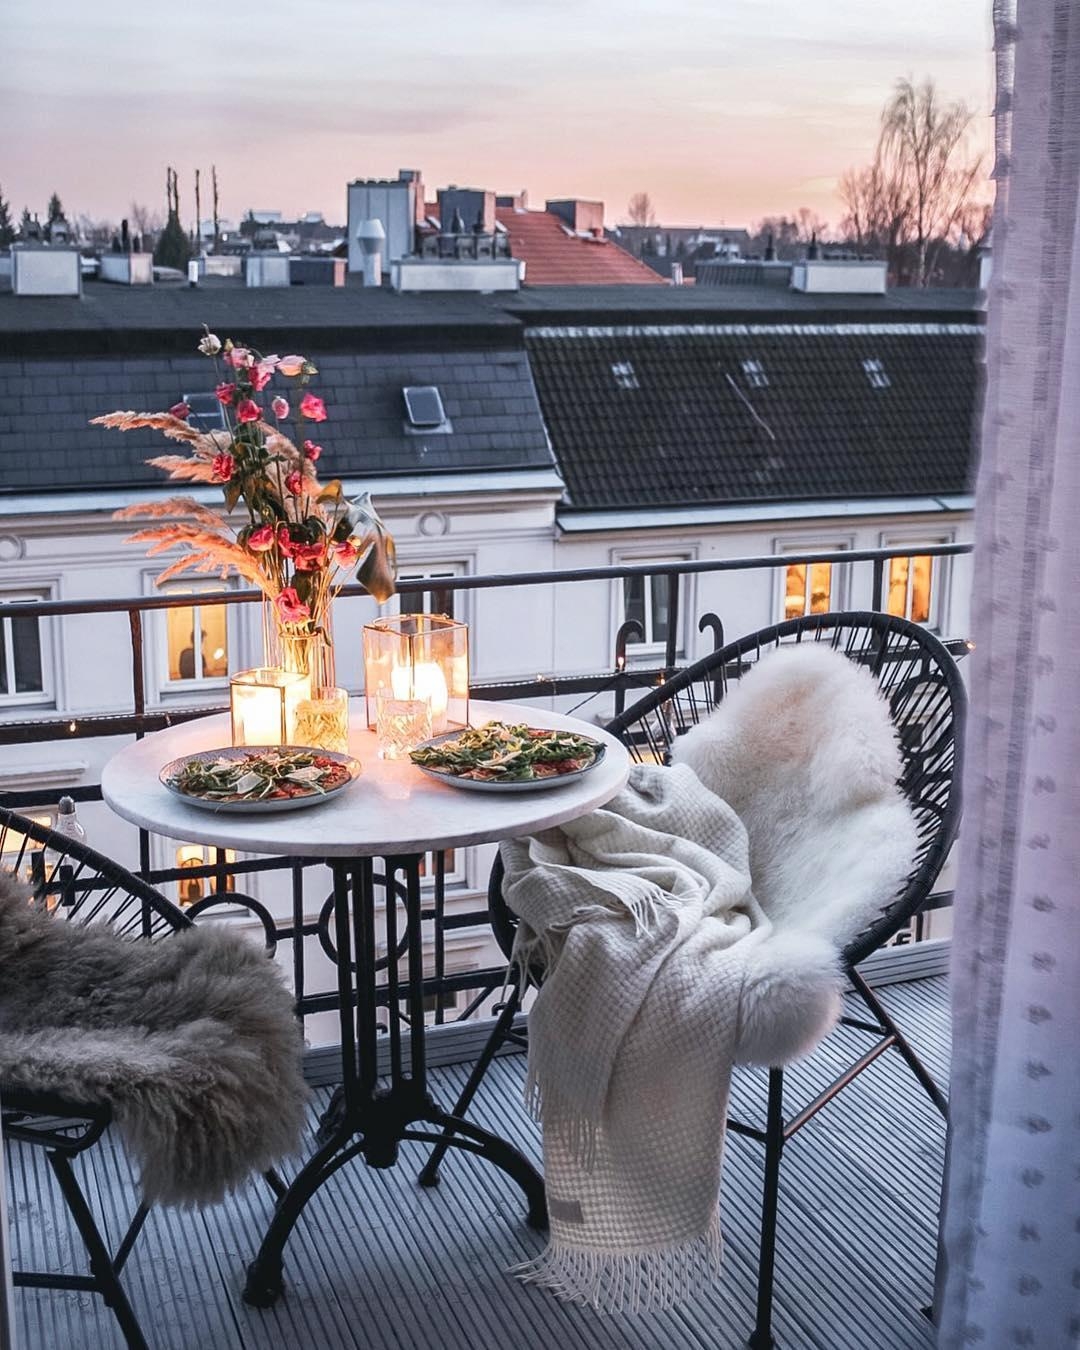 Unsere #Balkon-Stimmung am WE!

#balcony #balkonien #frühling #kerzen #abend #essen #gemütlich #hygge #scandi #nordic 